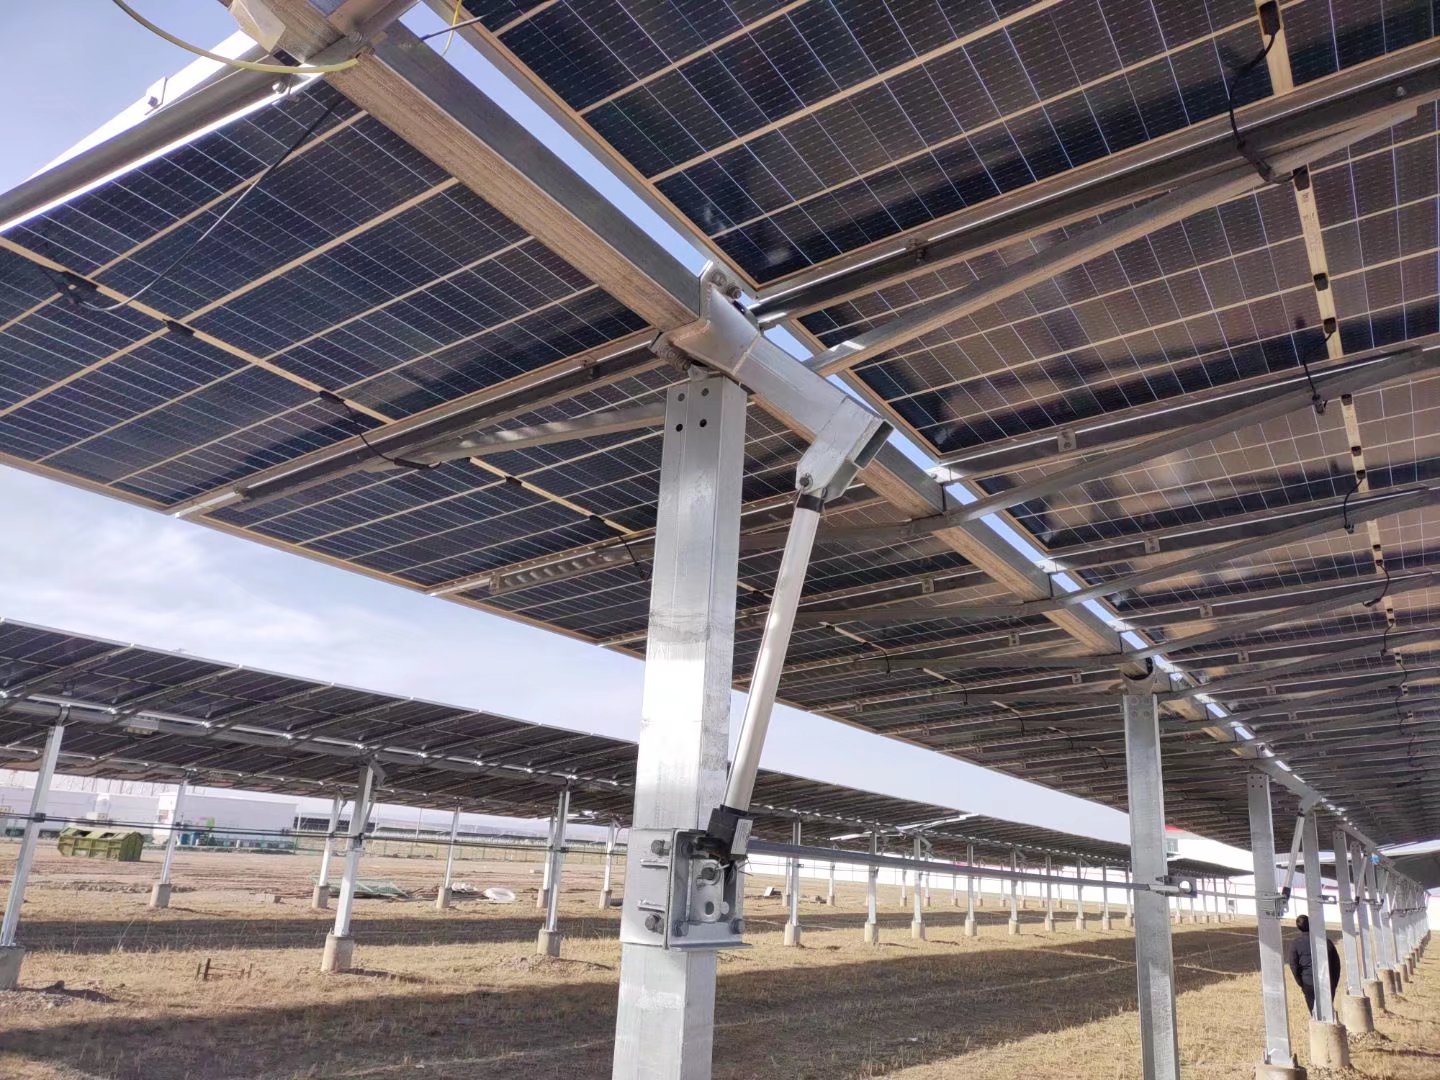 Cung cấp năng lượng cho trang trại năng lượng mặt trời và động vật trang trại của bạn bằng bộ truyền động tuyến tính Powernice